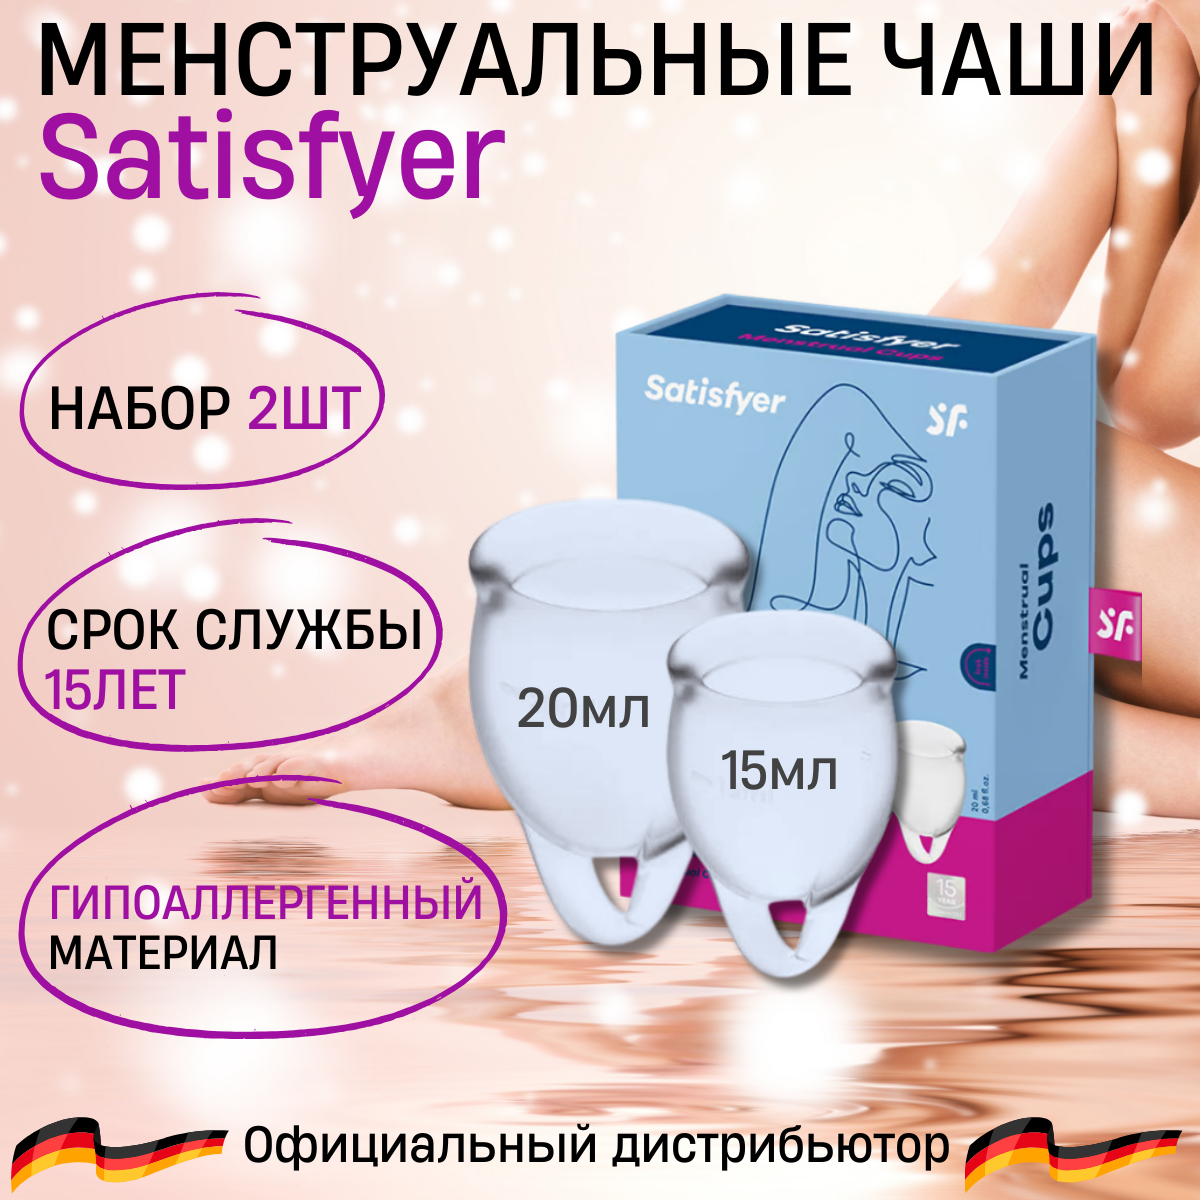 Satisfyer Feel confident tranparent Менструальная чаша (2 шт.)